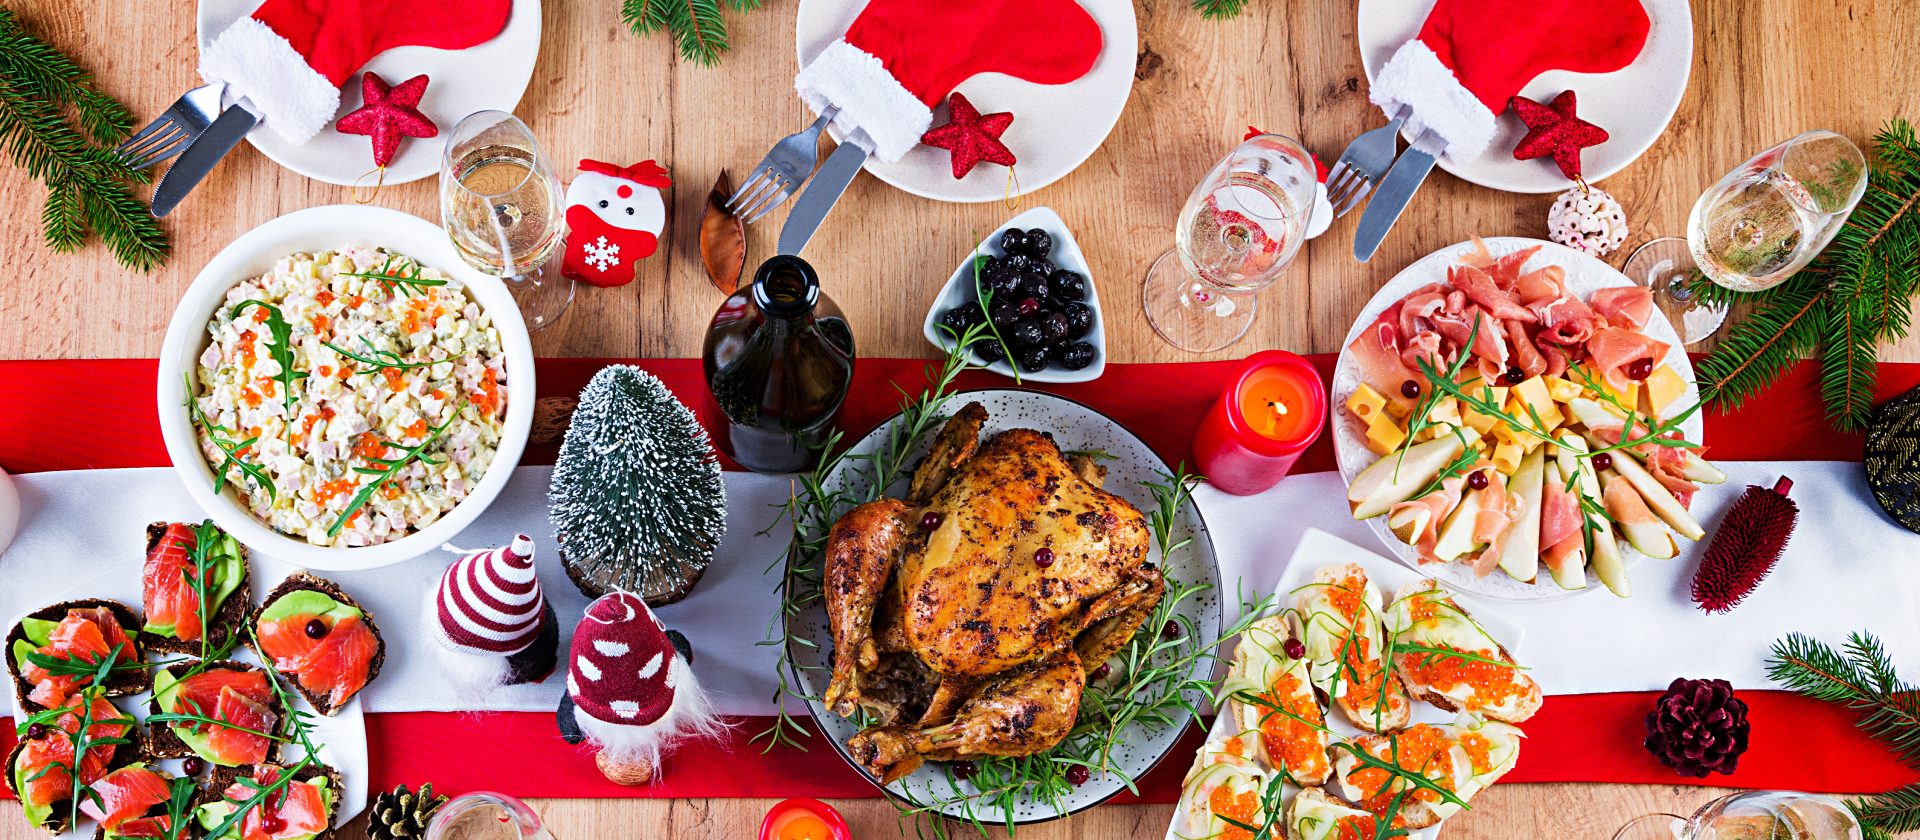 3 recetas fáciles y económicas para tu cena navideña